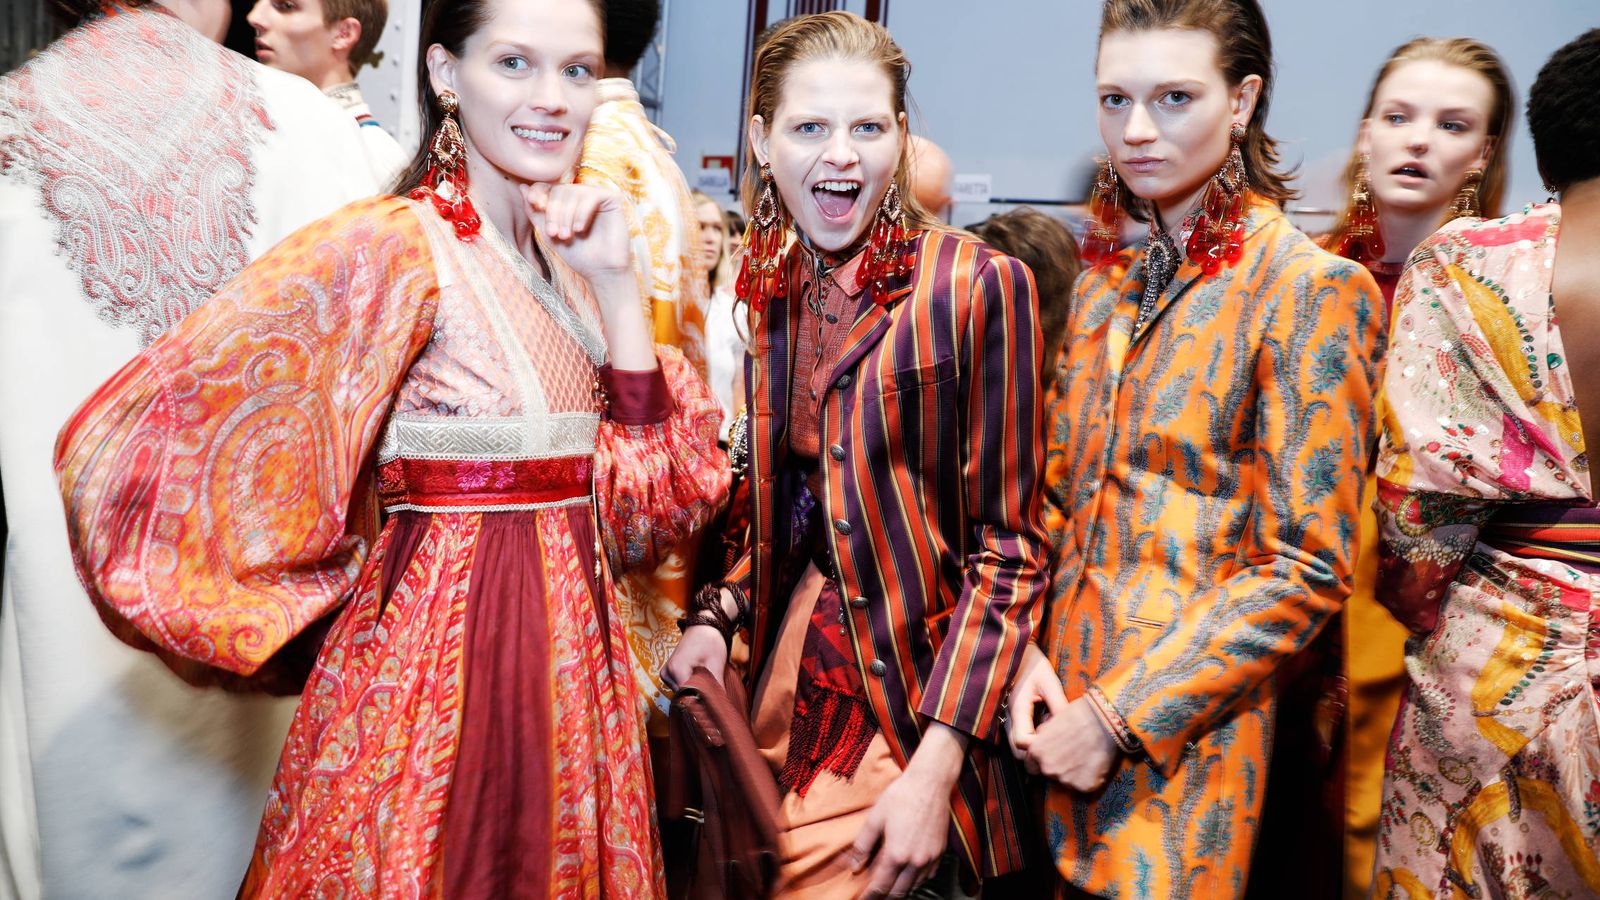 Foto: Backstage de la firma Etro, Semana de la Moda de Milán (Tristan Fewings/Getty Images)